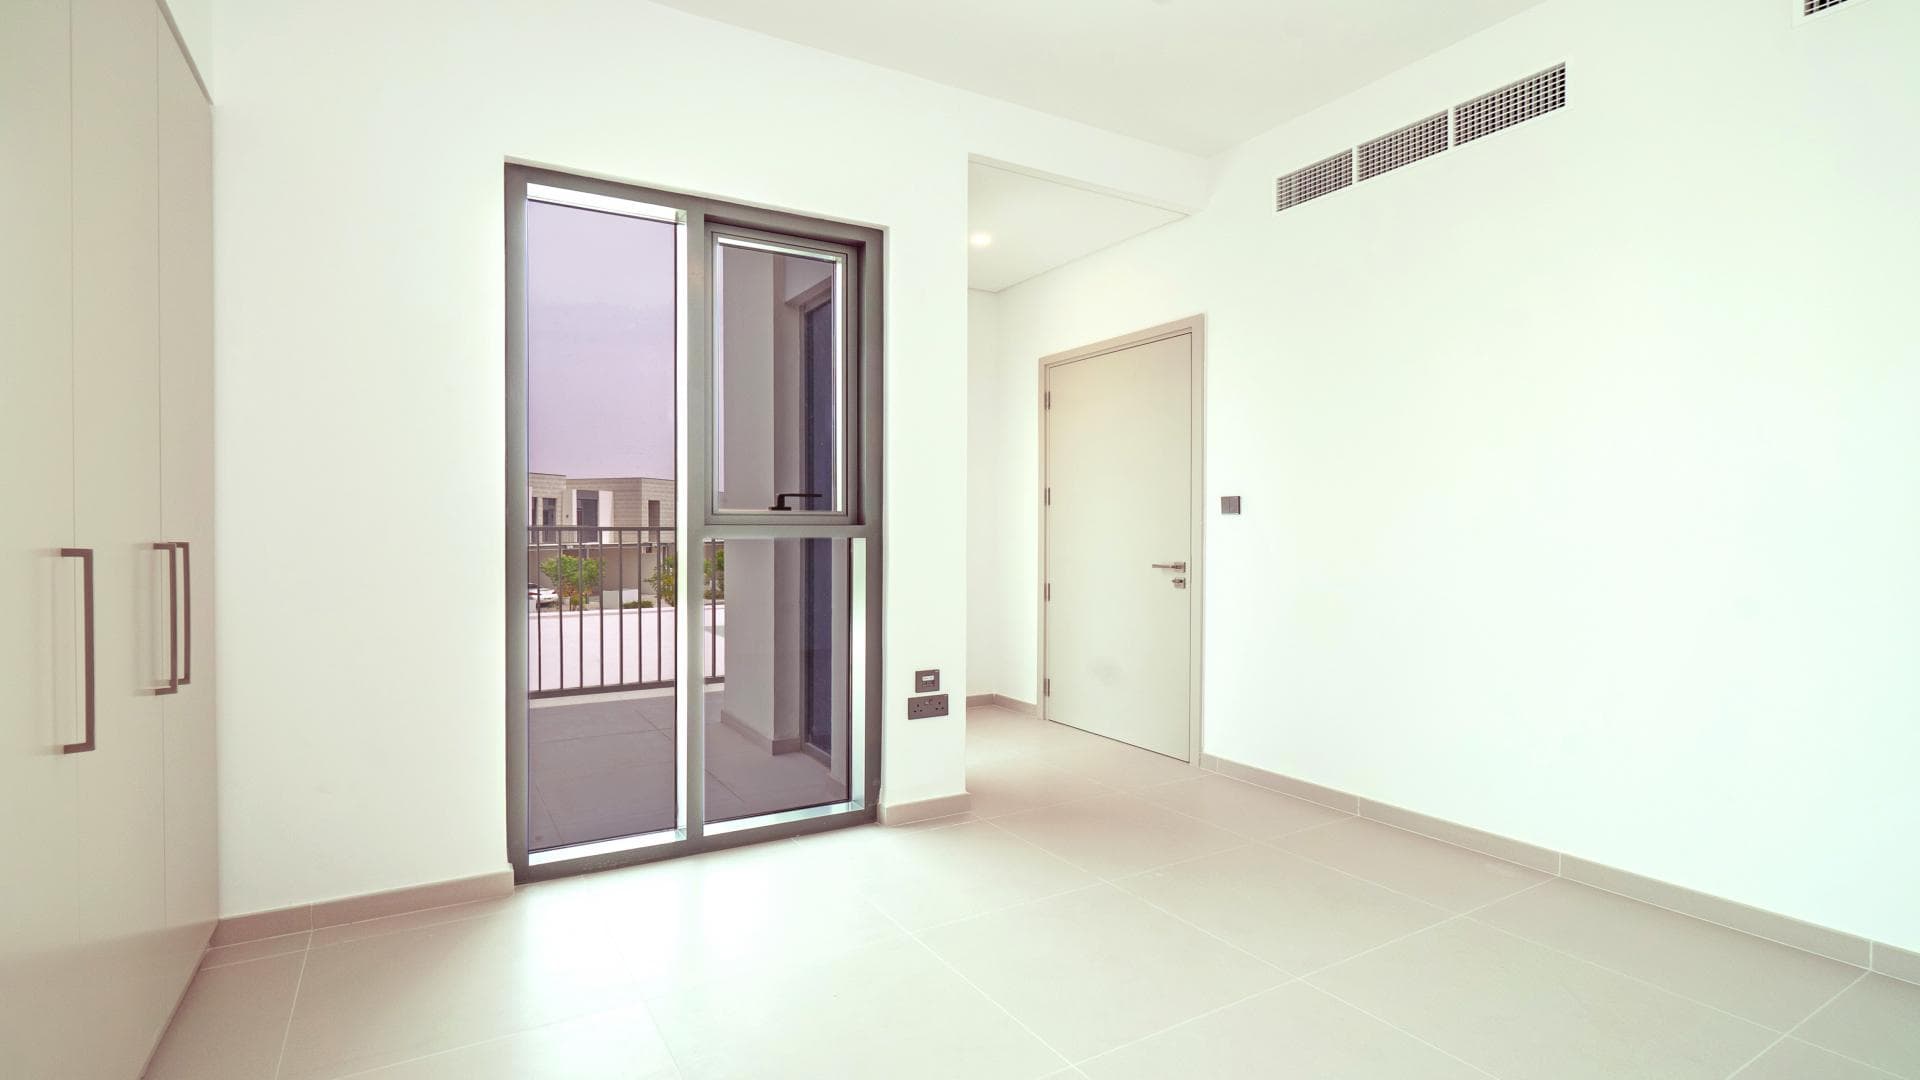 4 Bedroom Villa For Rent Warda Apartments 1b Lp36491 28916633ad0f5600.jpg